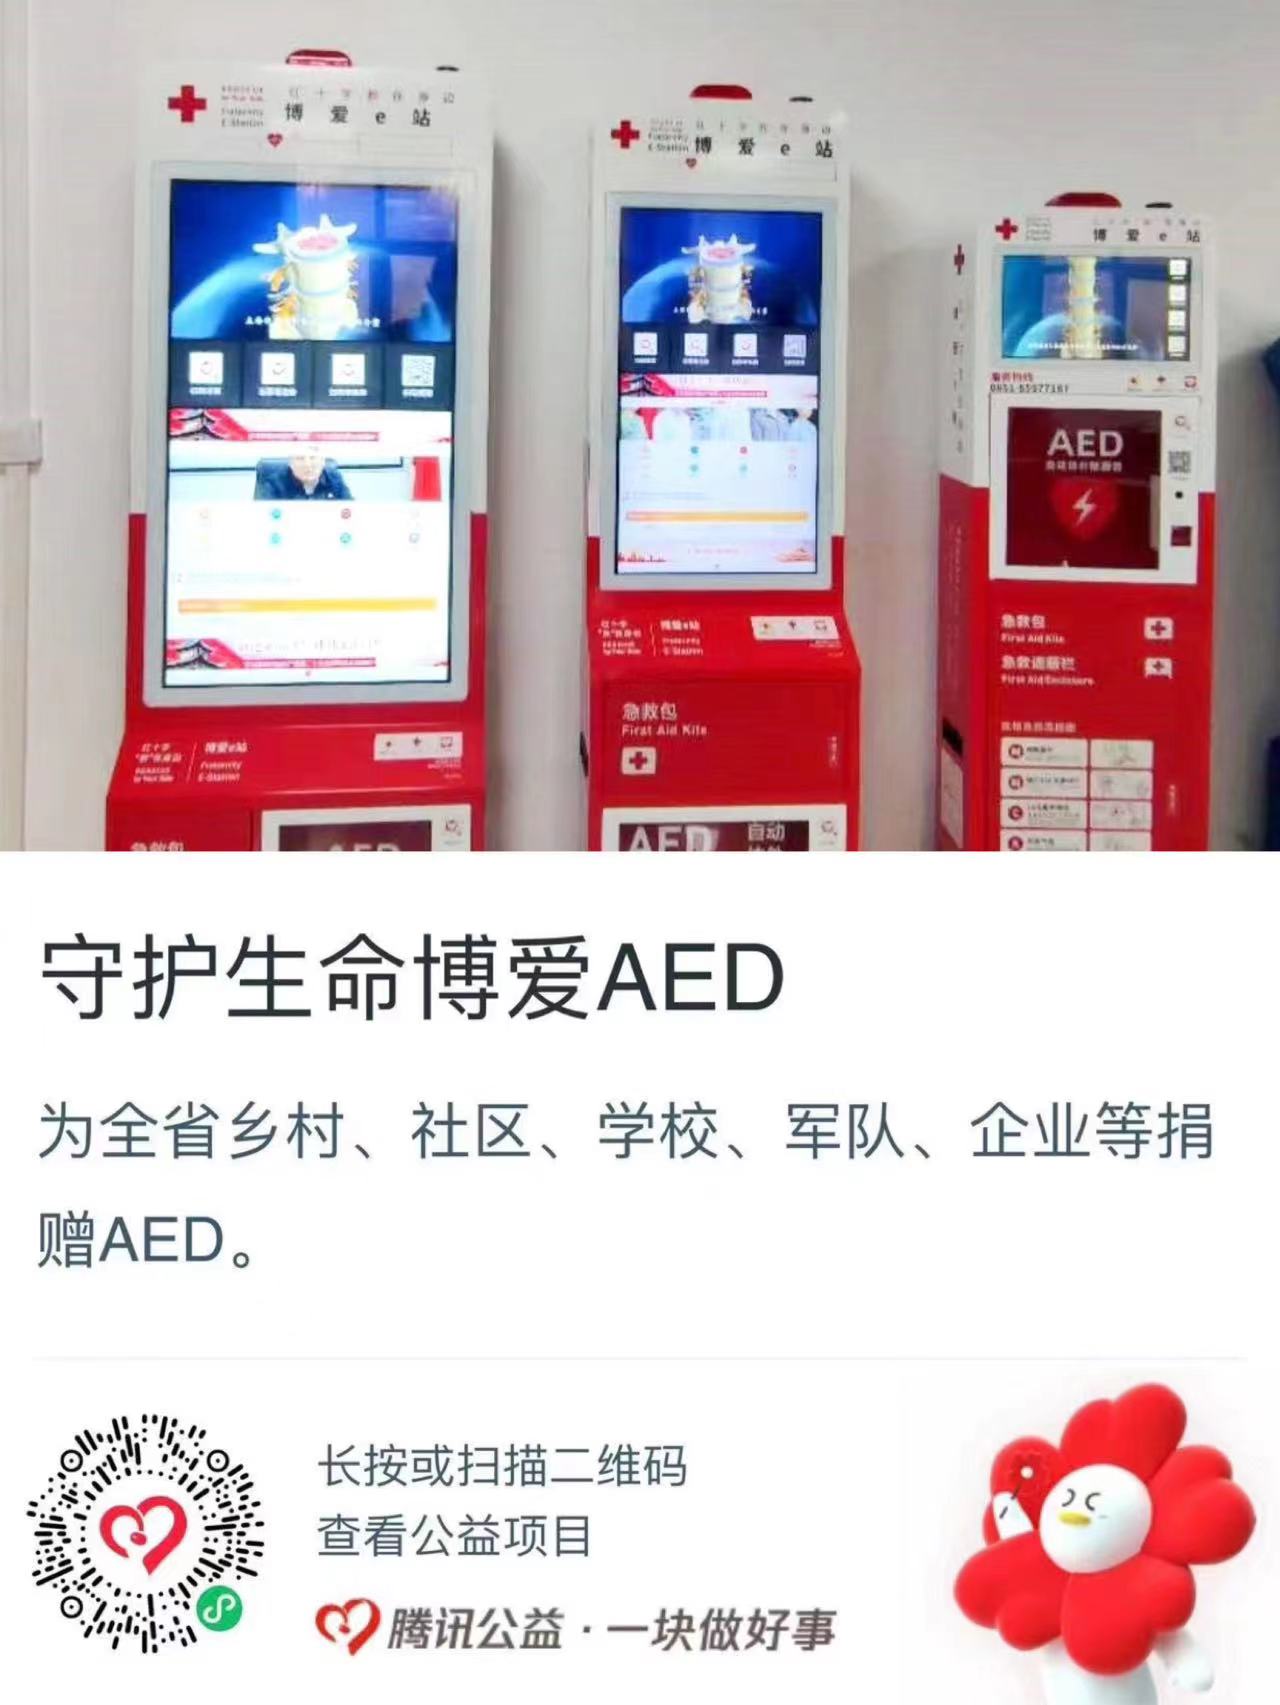 贵州红基会“守护生命博爱AED”项目筹款超十万元